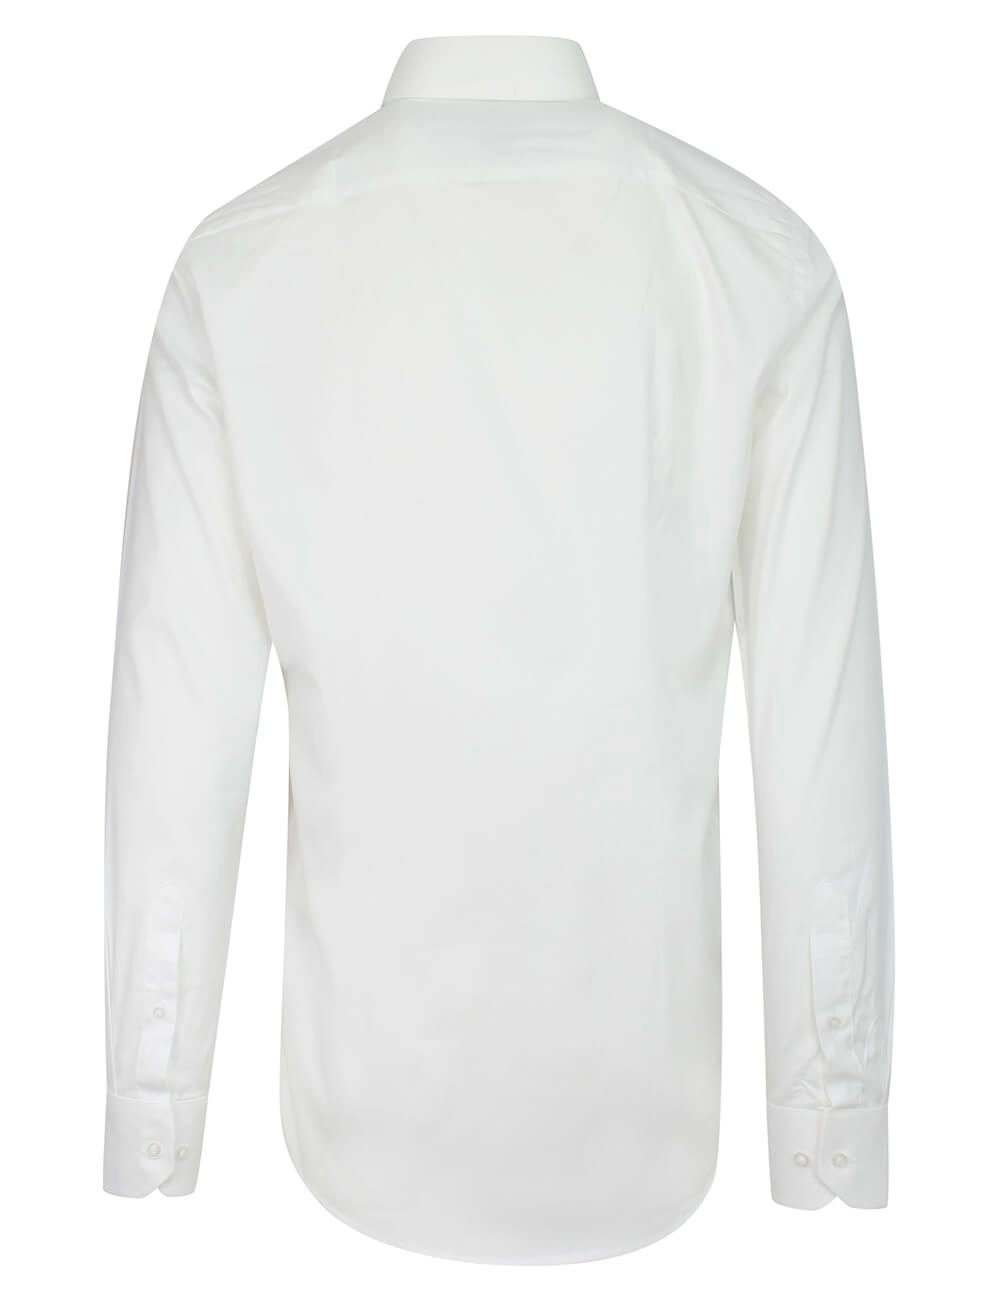 Biała Koszula Wizytowa Męska, z Długim Rękawem, Taliowana, 100% Bawełna -RANIR